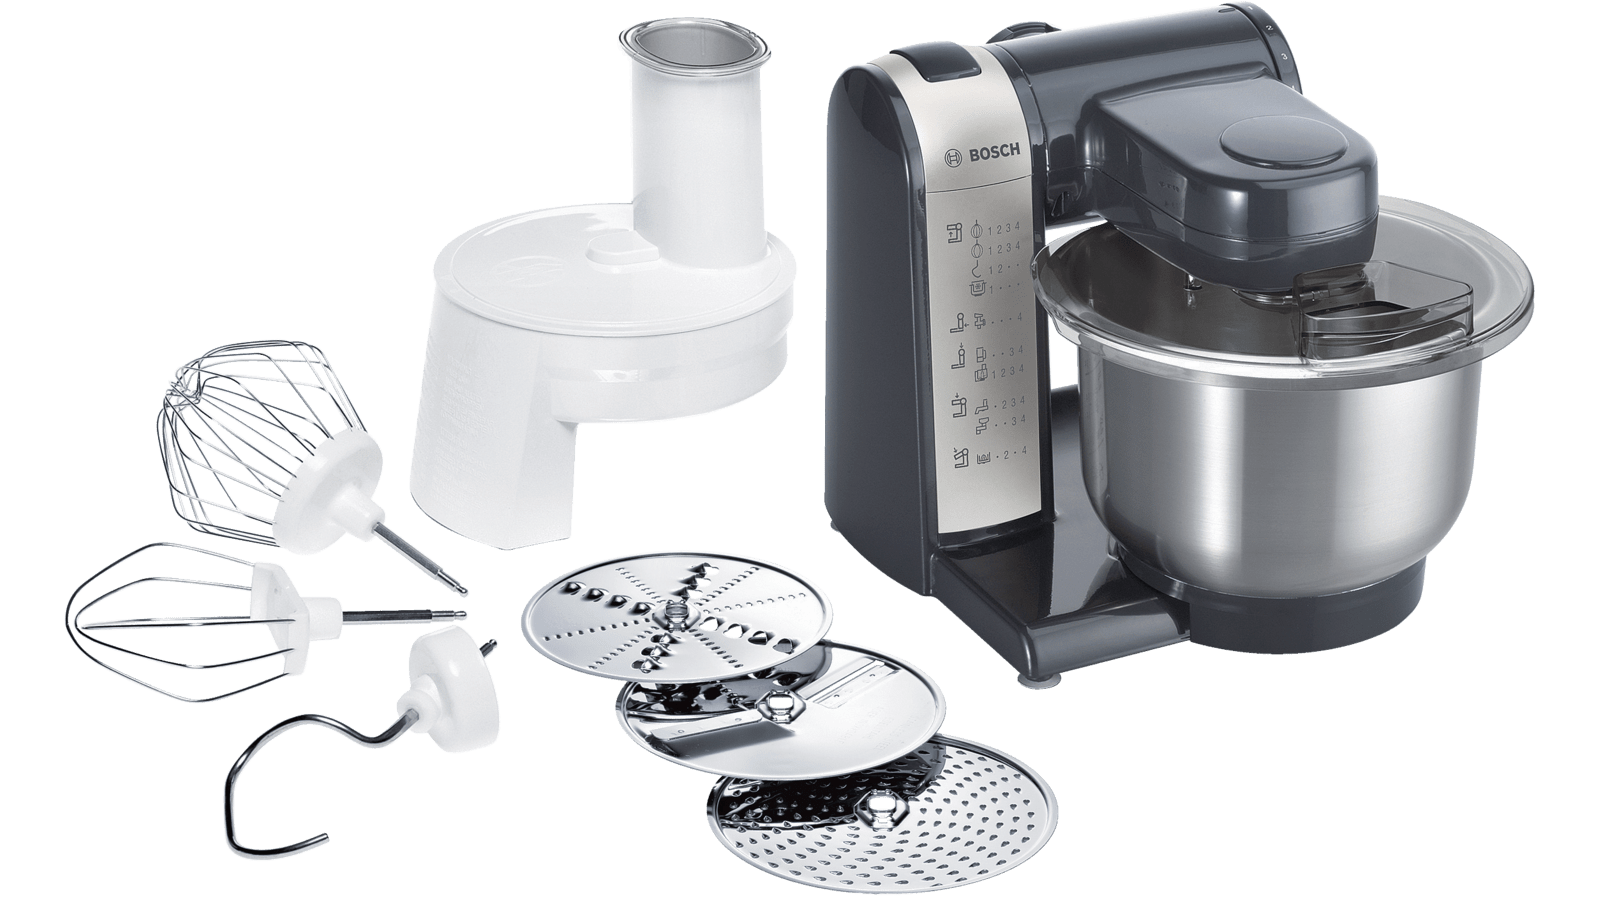 MUM48A1 Compacte keukenrobot | BOSCH